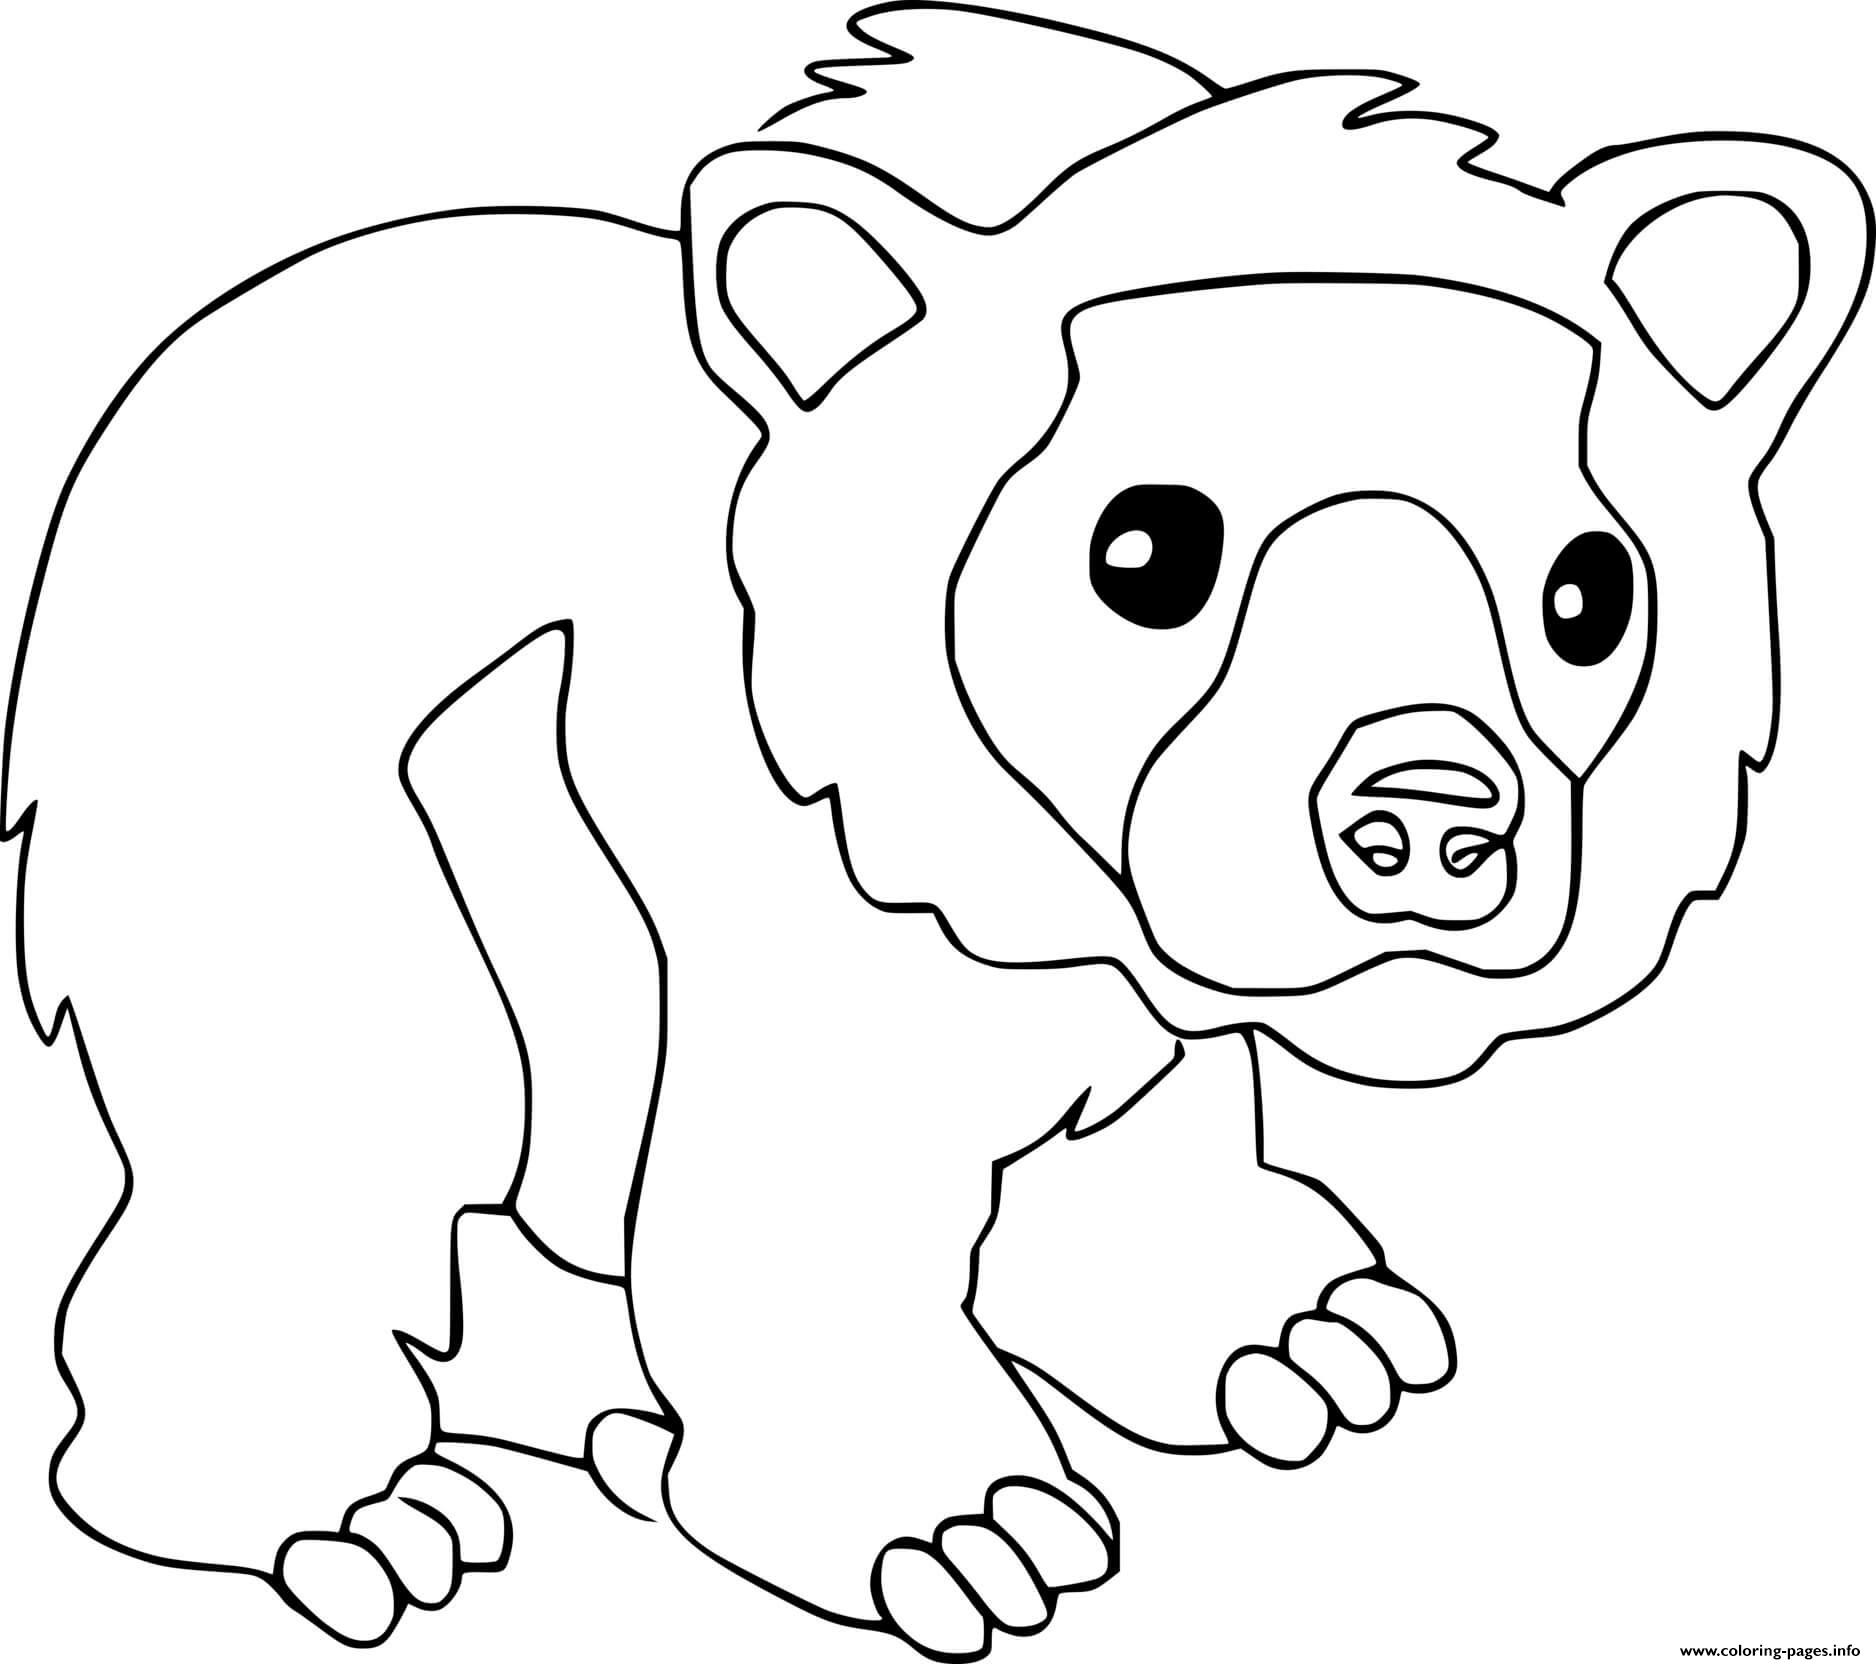 Раскраска медведь для детей 2 3 лет. Медведь раскраска. Медведь раскраска для детей. Медвежонок раскраска для детей. Медведь для раскрашивания детям.